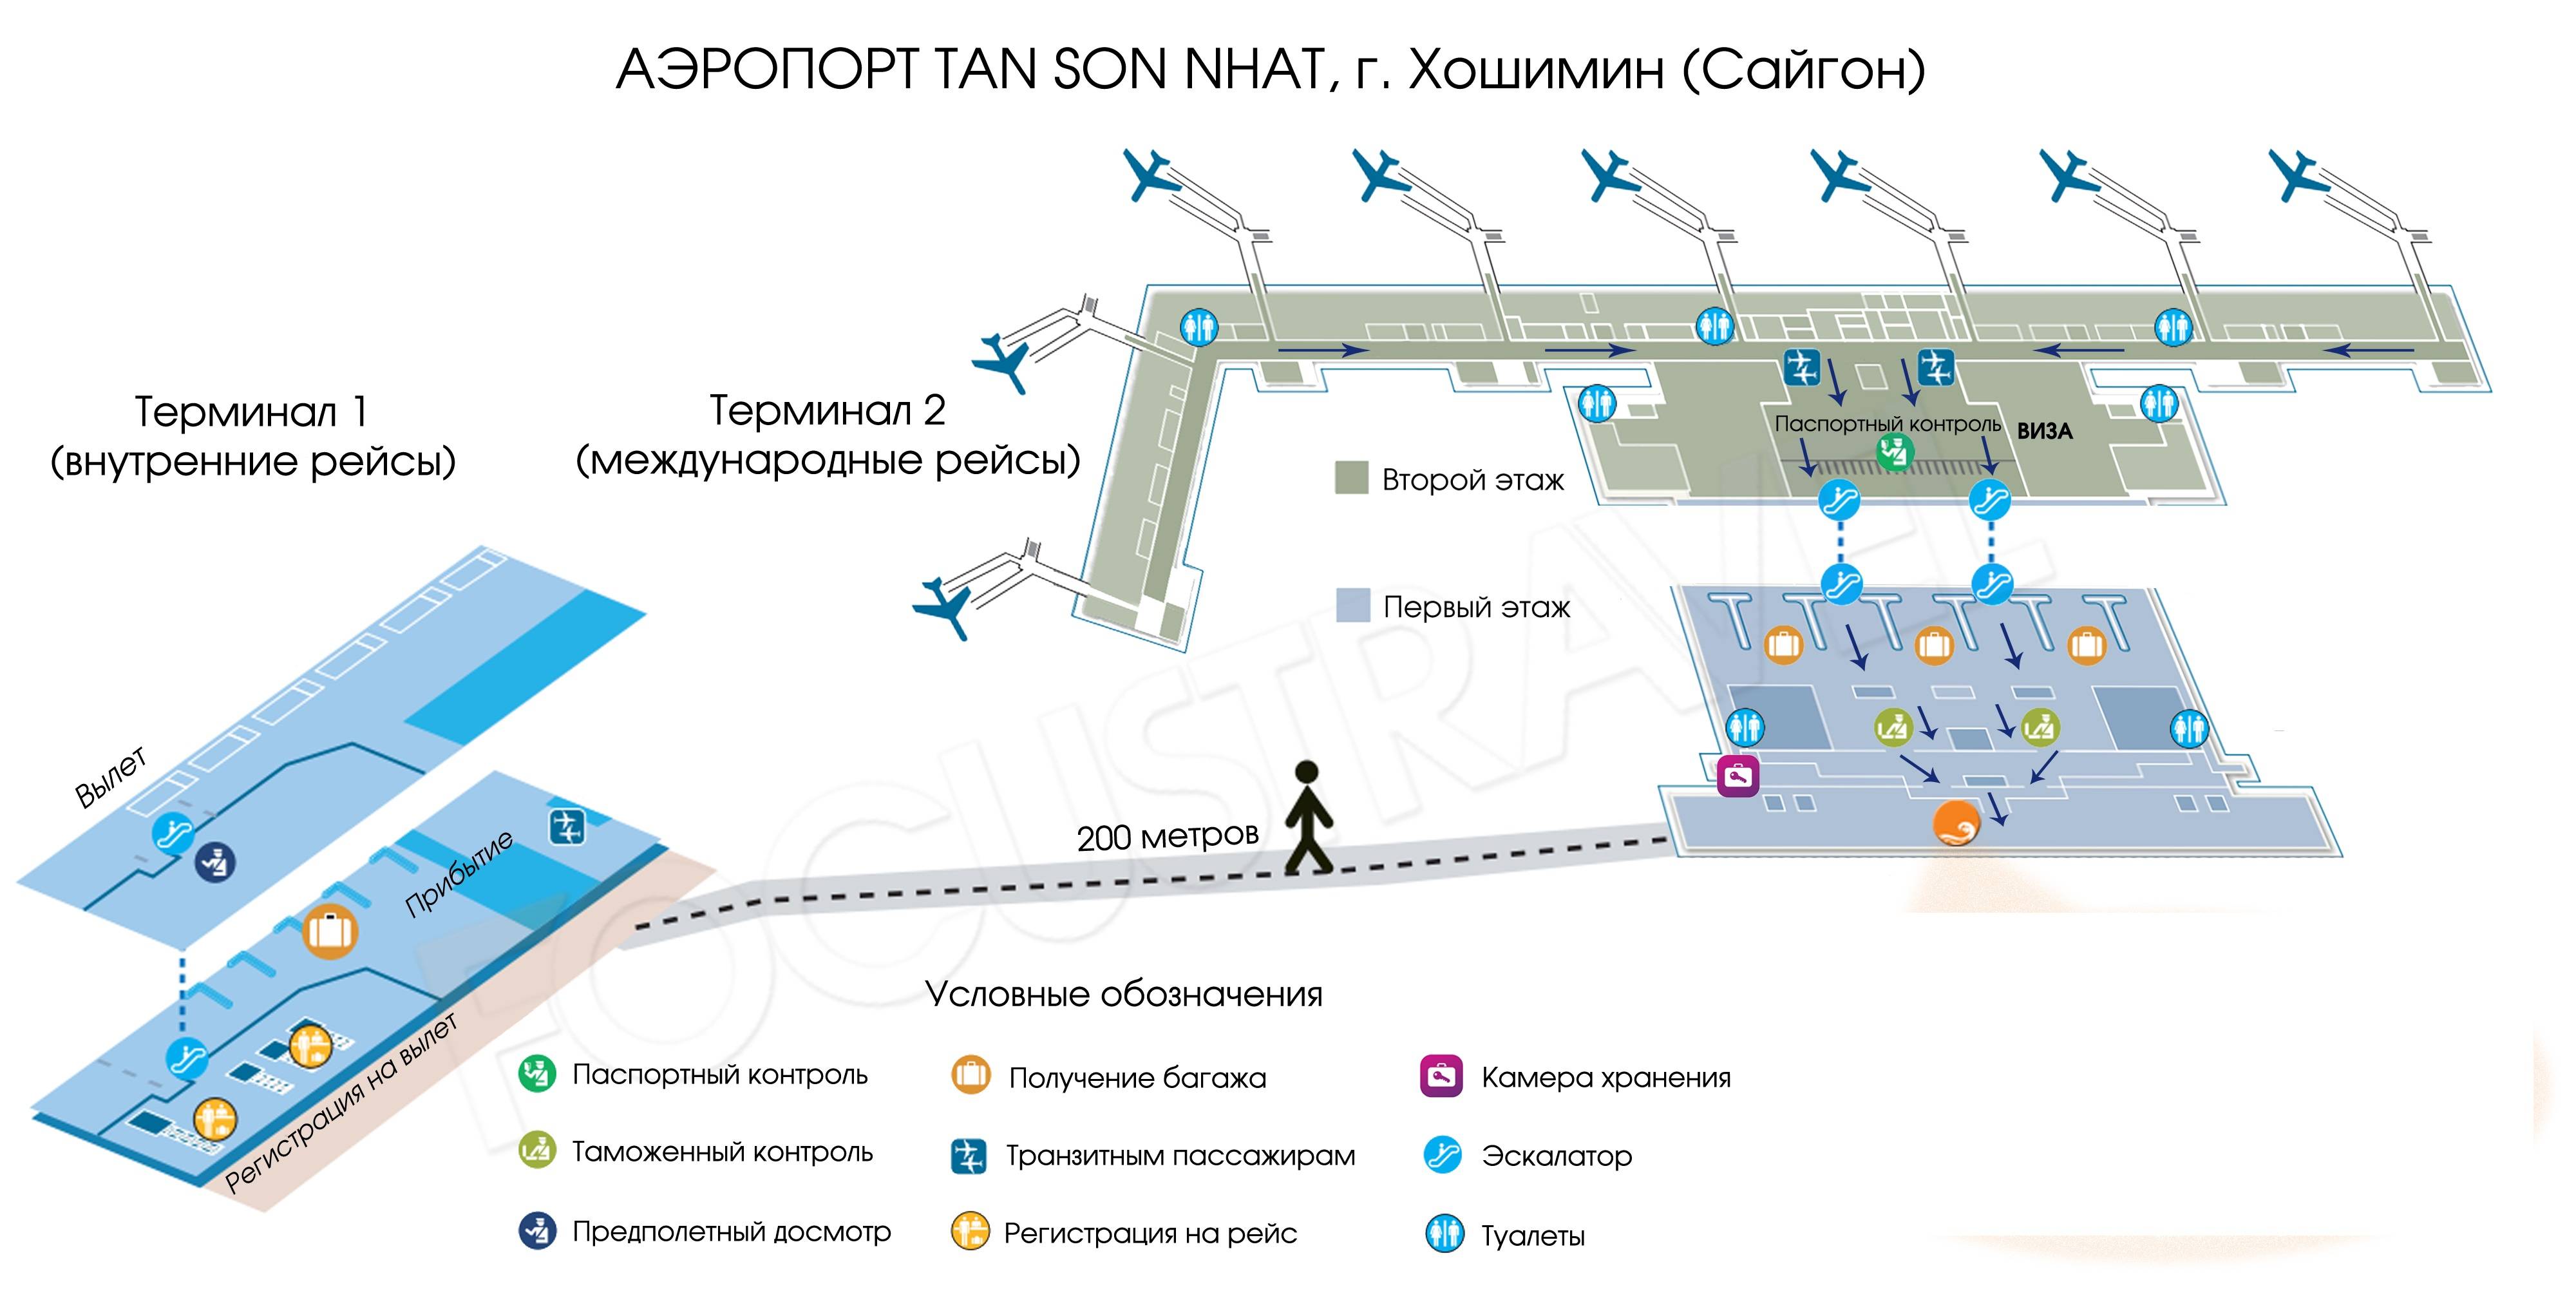 Аэропорт рощино: расписание рейсов на онлайн-табло, фото, отзывы и адрес